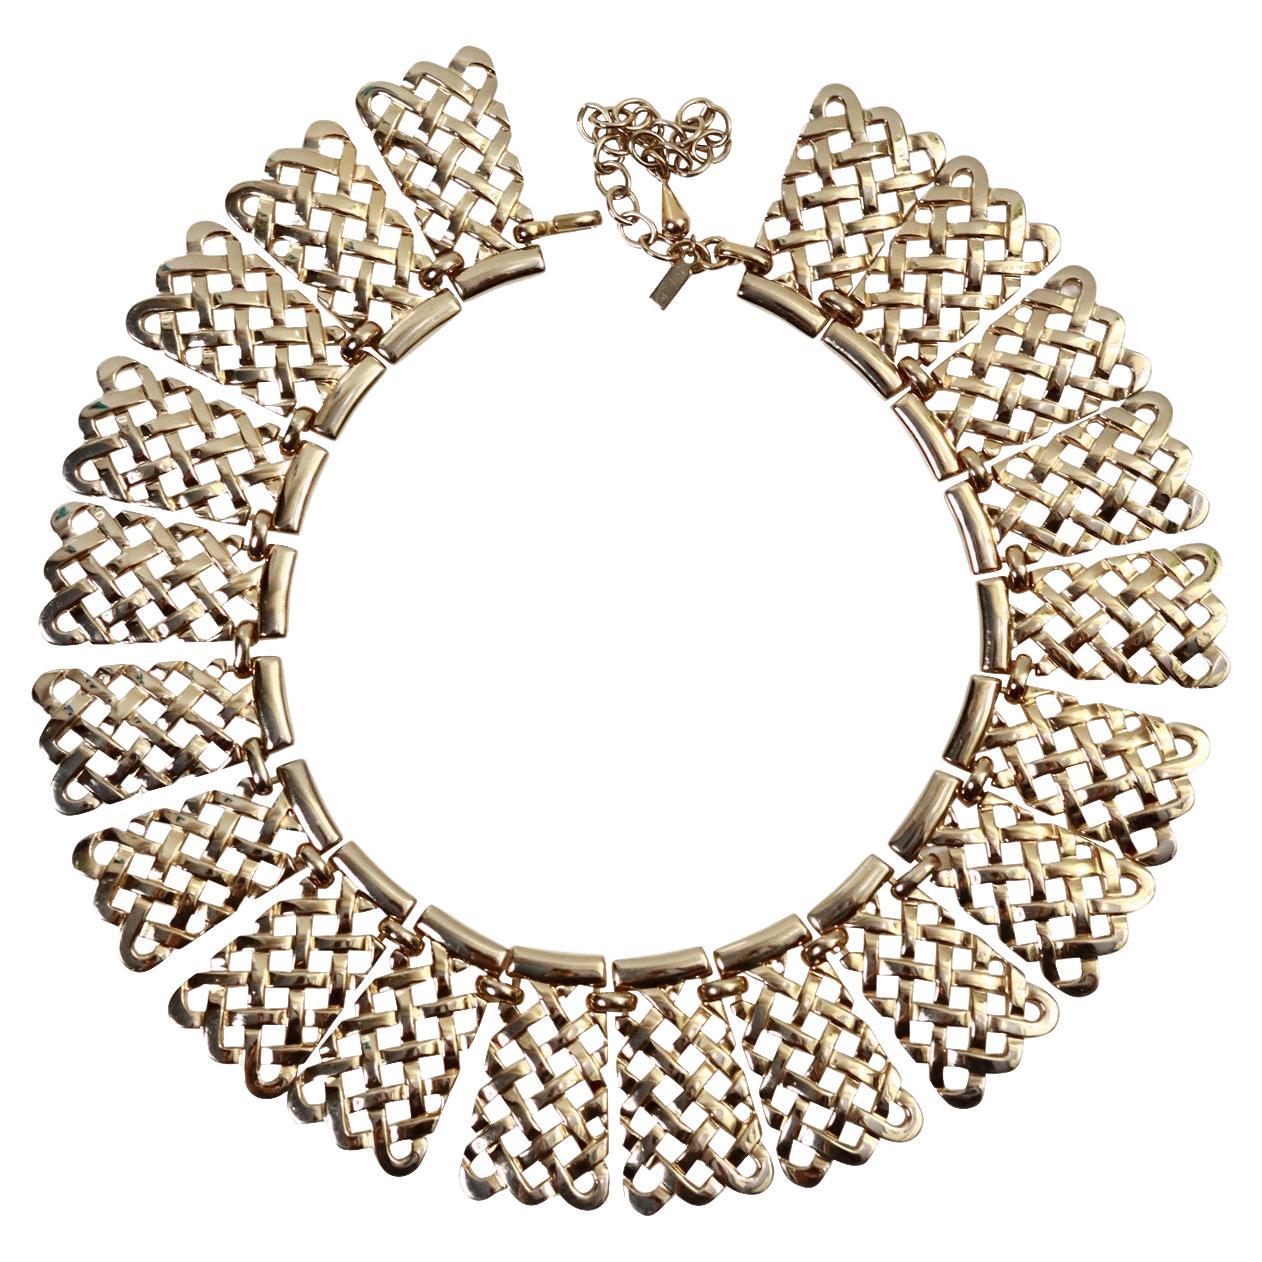 Vintage Monet Lattice Collar Necklace Circa 1980s. Ce collier en or s'accorde avec tout. Whiting se porte aussi bien sur un t-shirt ou un chemisier blanc que sur une tenue plus habillée. Monet a fabriqué les bijoux  pour YSL dans les années 1980 et